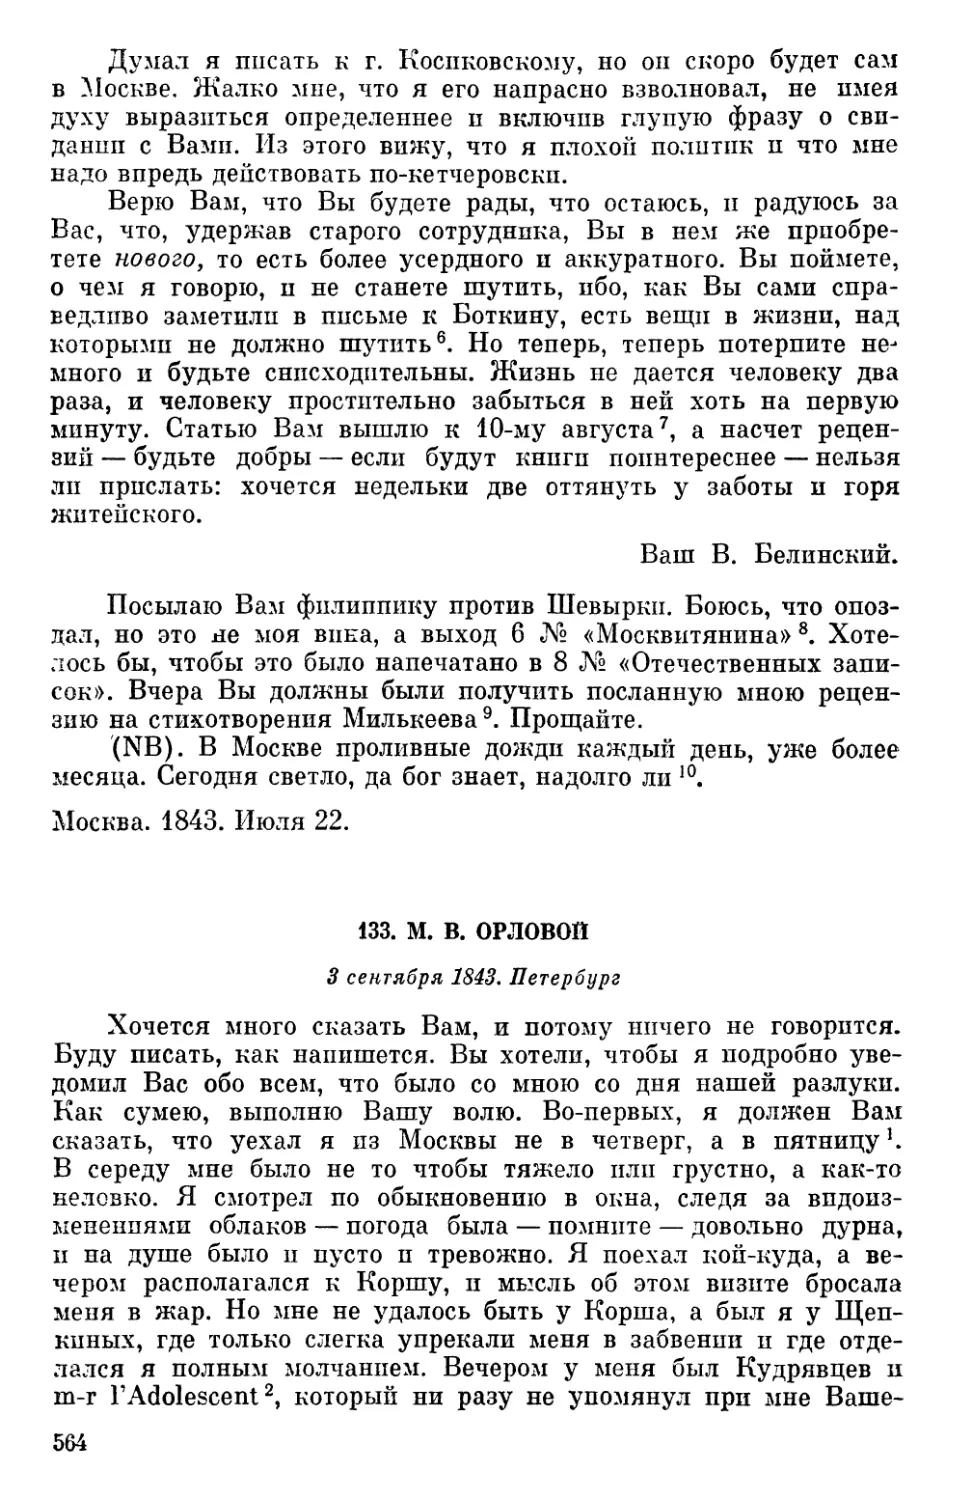 133. М. В. Орловой. 3 сентября 1843